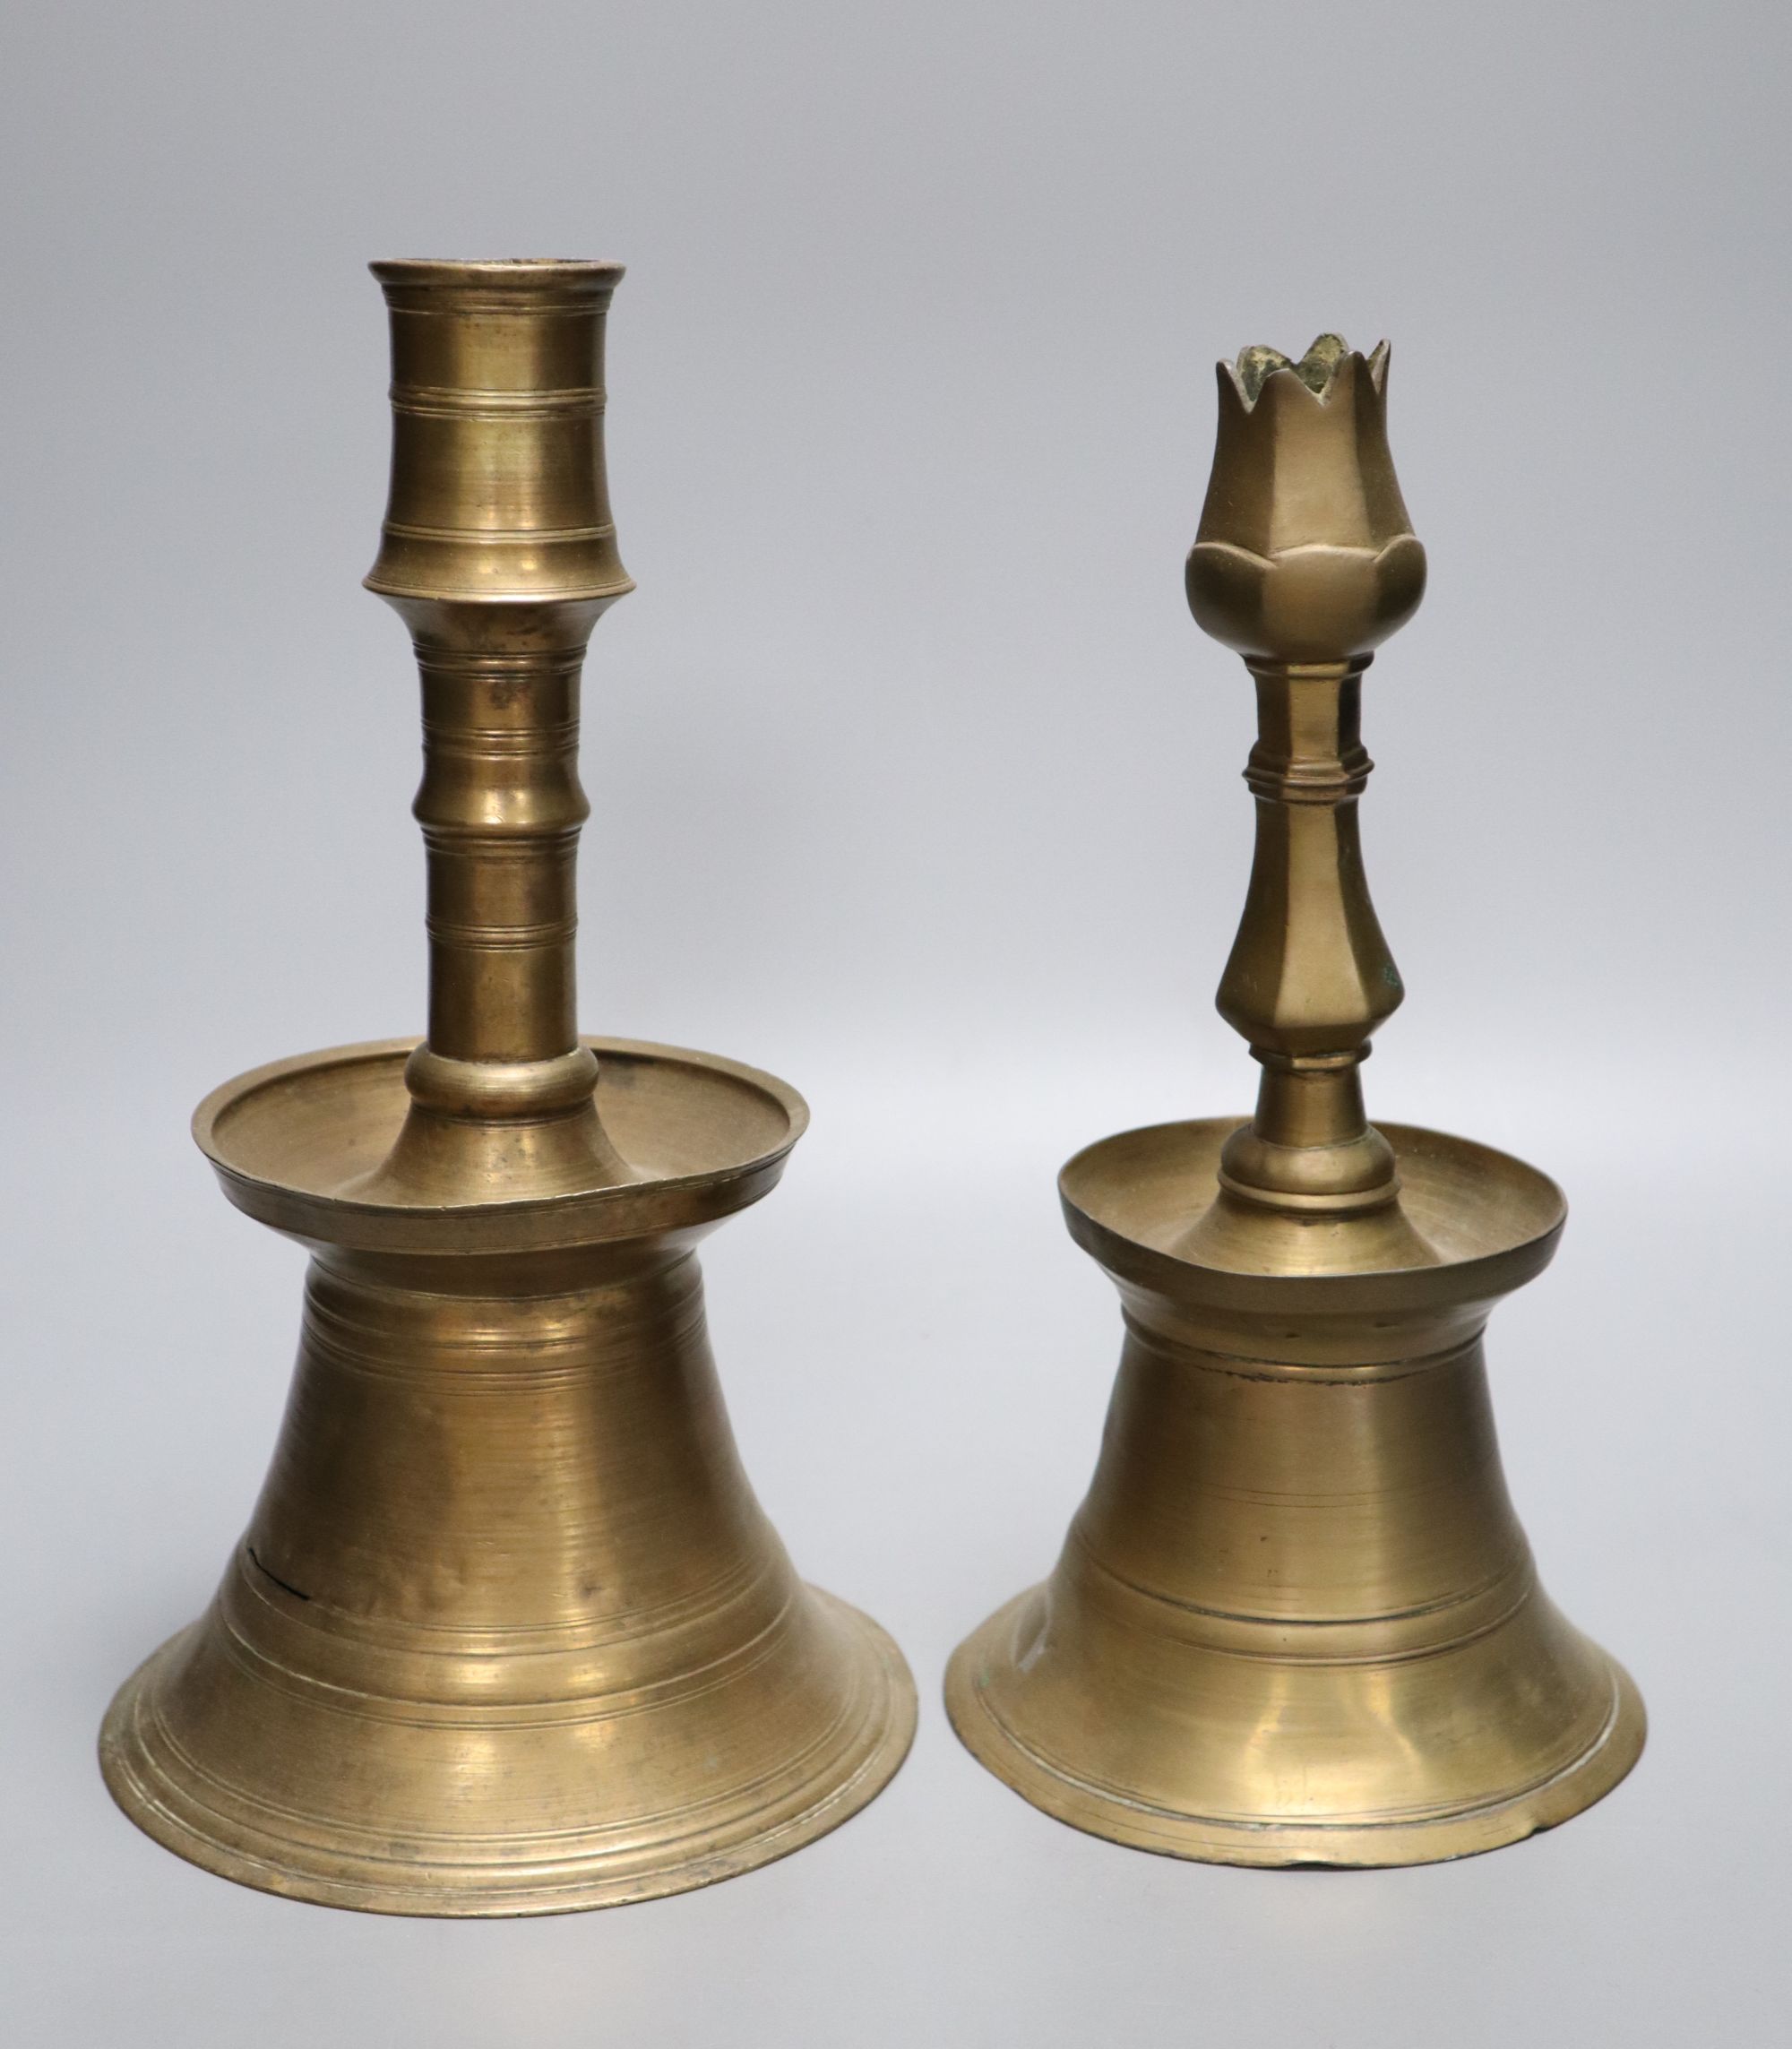 Two Ottoman brass candlesticks, height 28cm